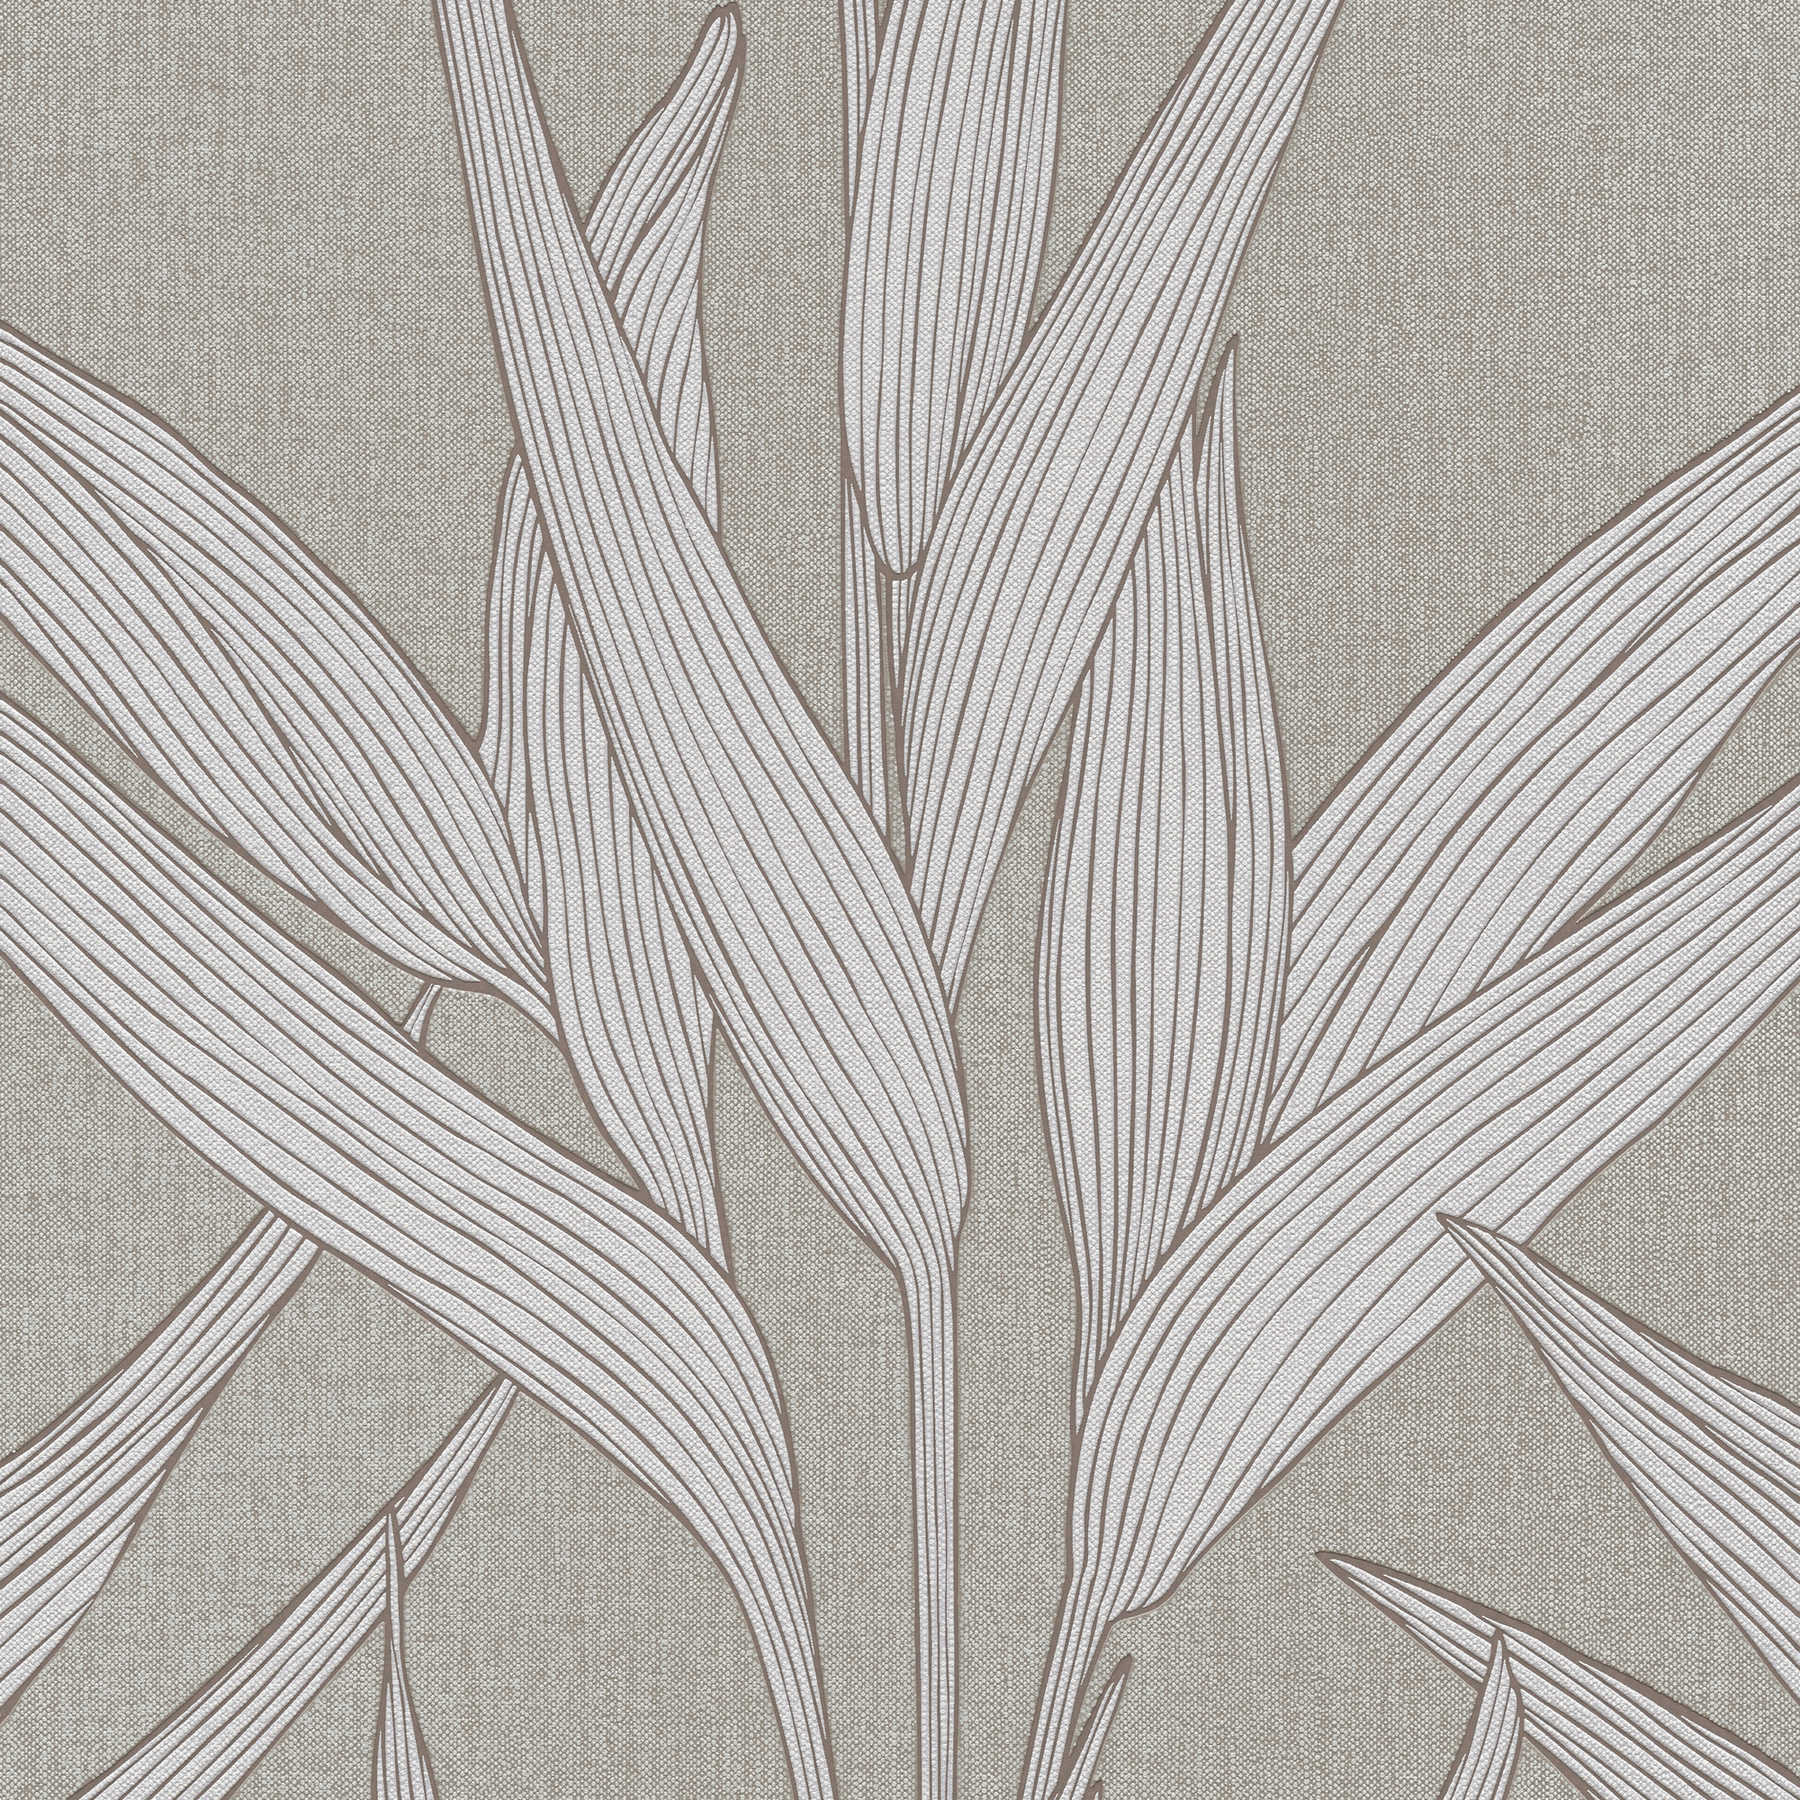 Papier peint Hygge aspect lin & motif feuilles - Gris
